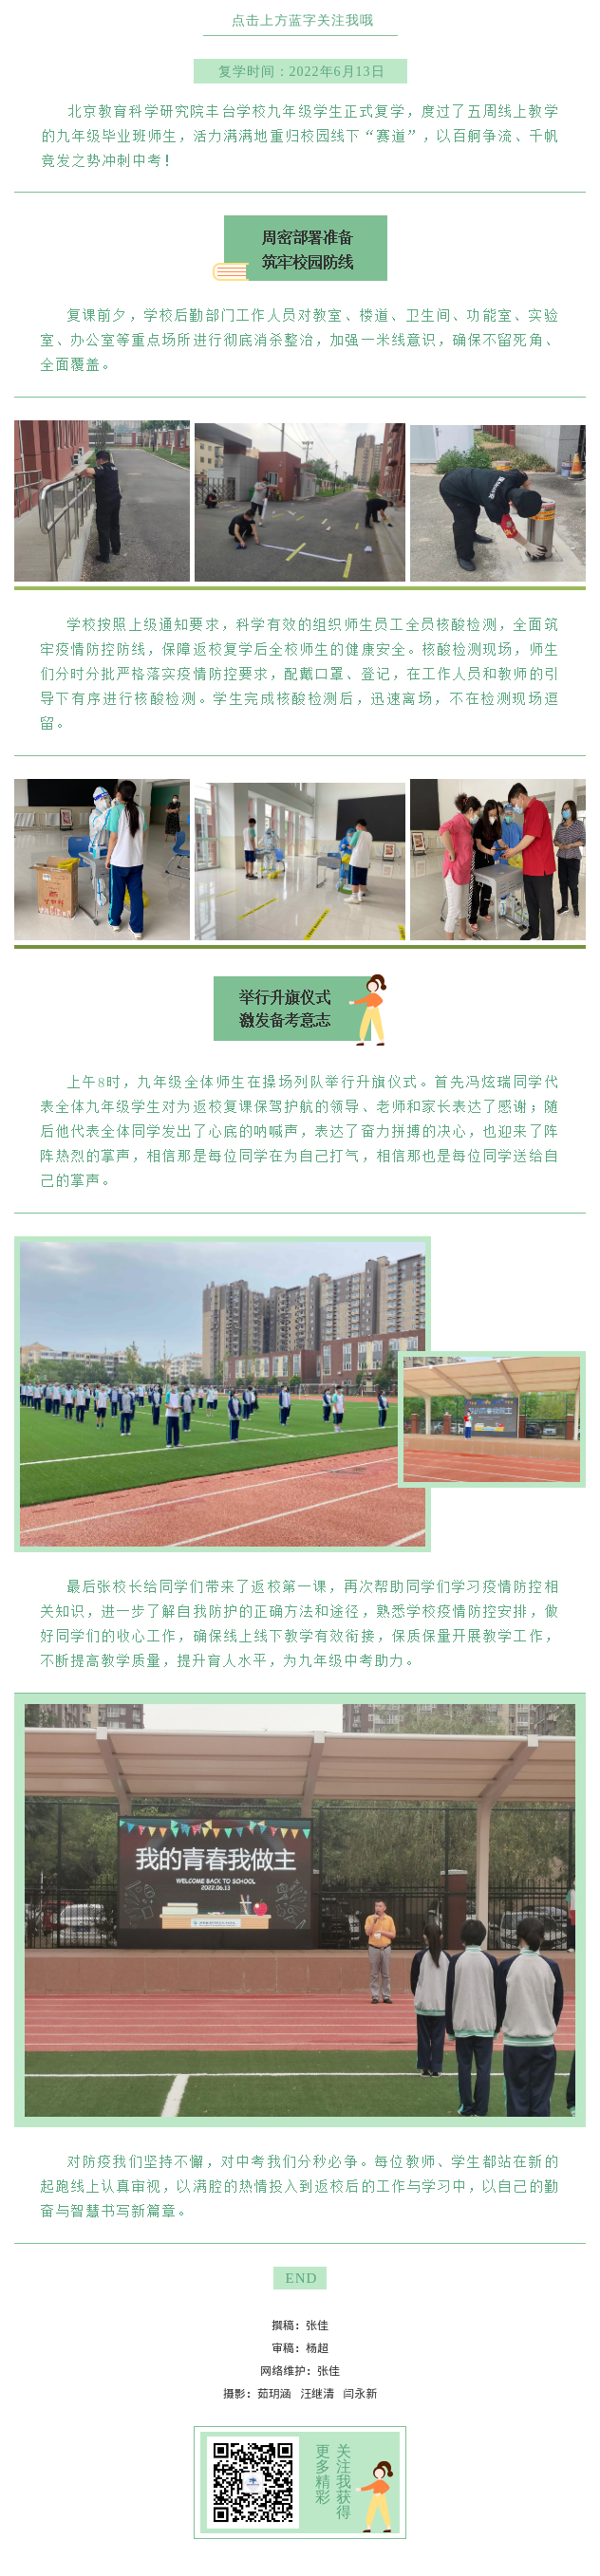 20220613全力以“复” 我的青春我做主 ——北京教科院丰台学校九年级复学